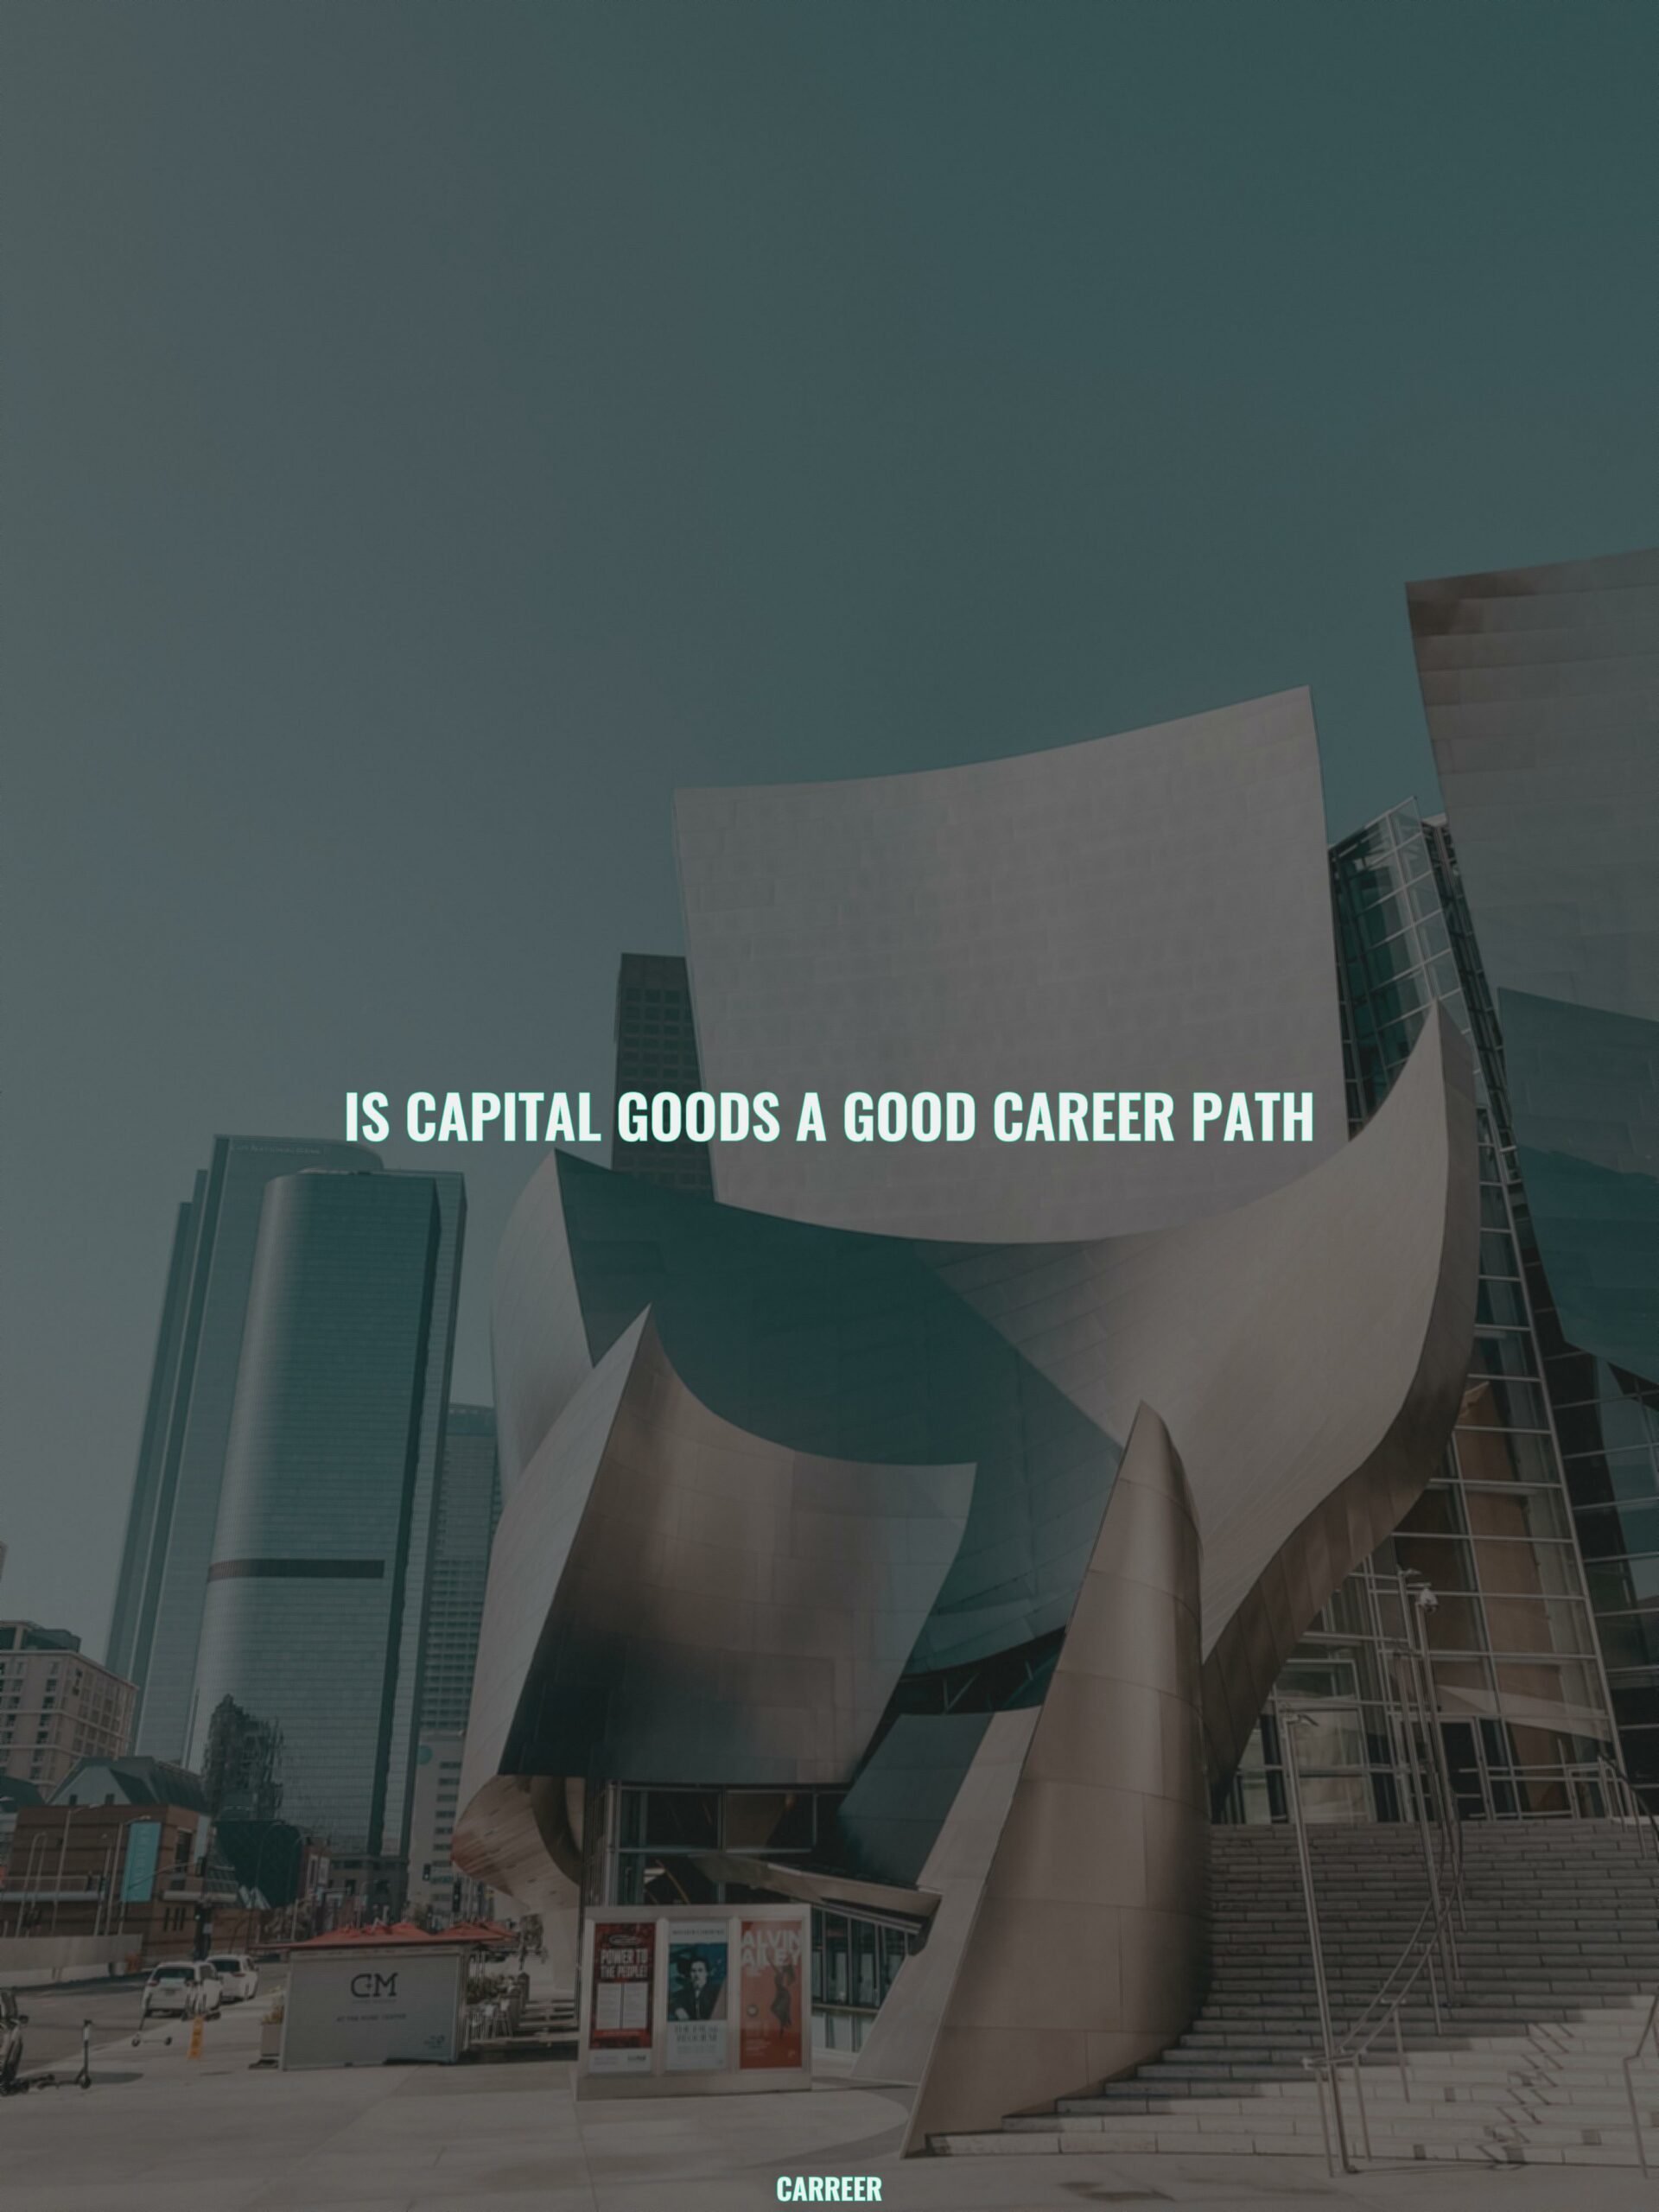 Is capital goods a good career path